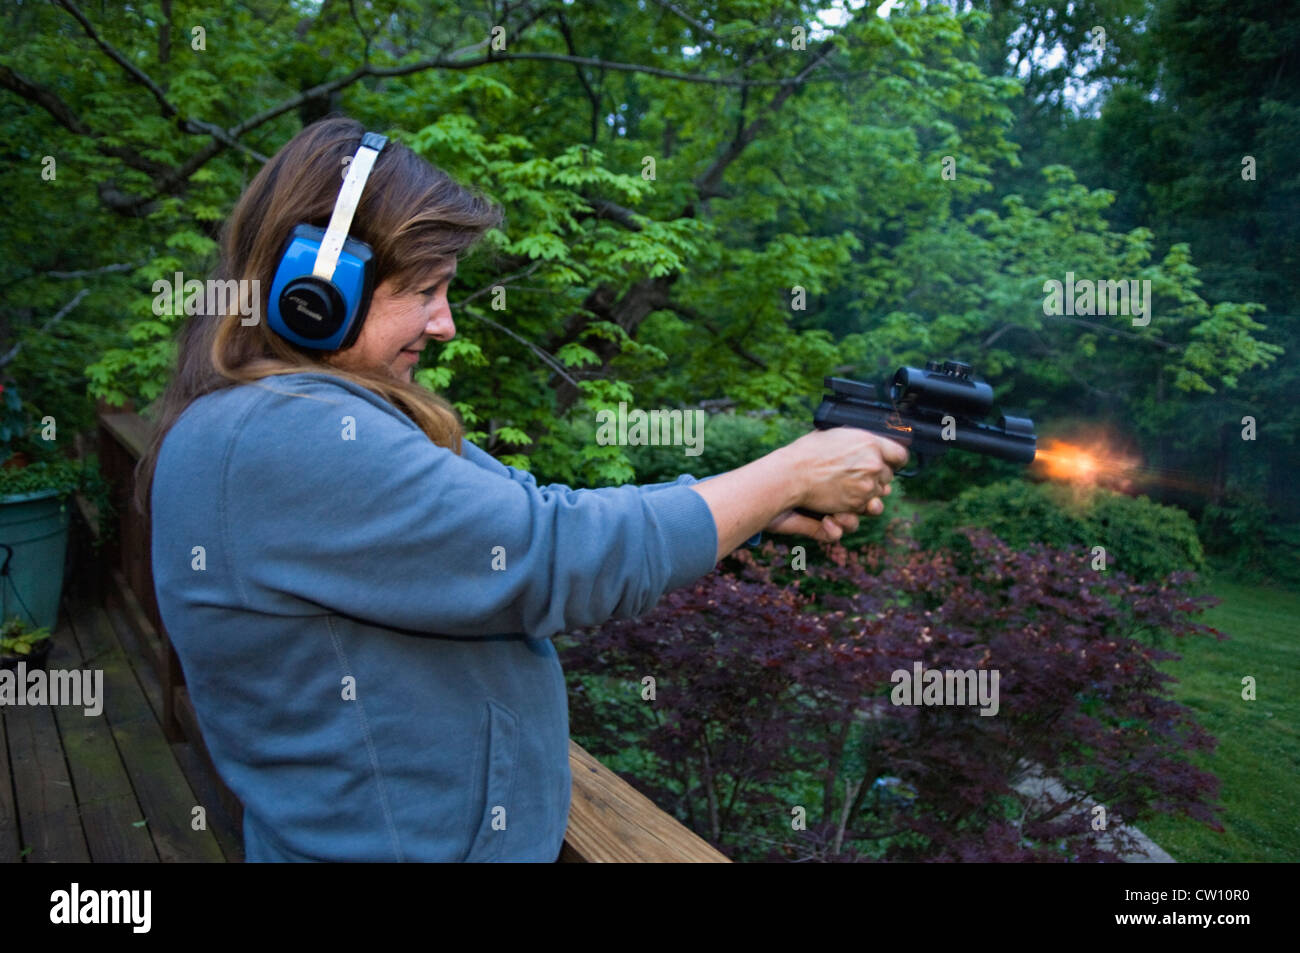 La donna la ripresa di un .22 Pistola semi-automatica Foto Stock